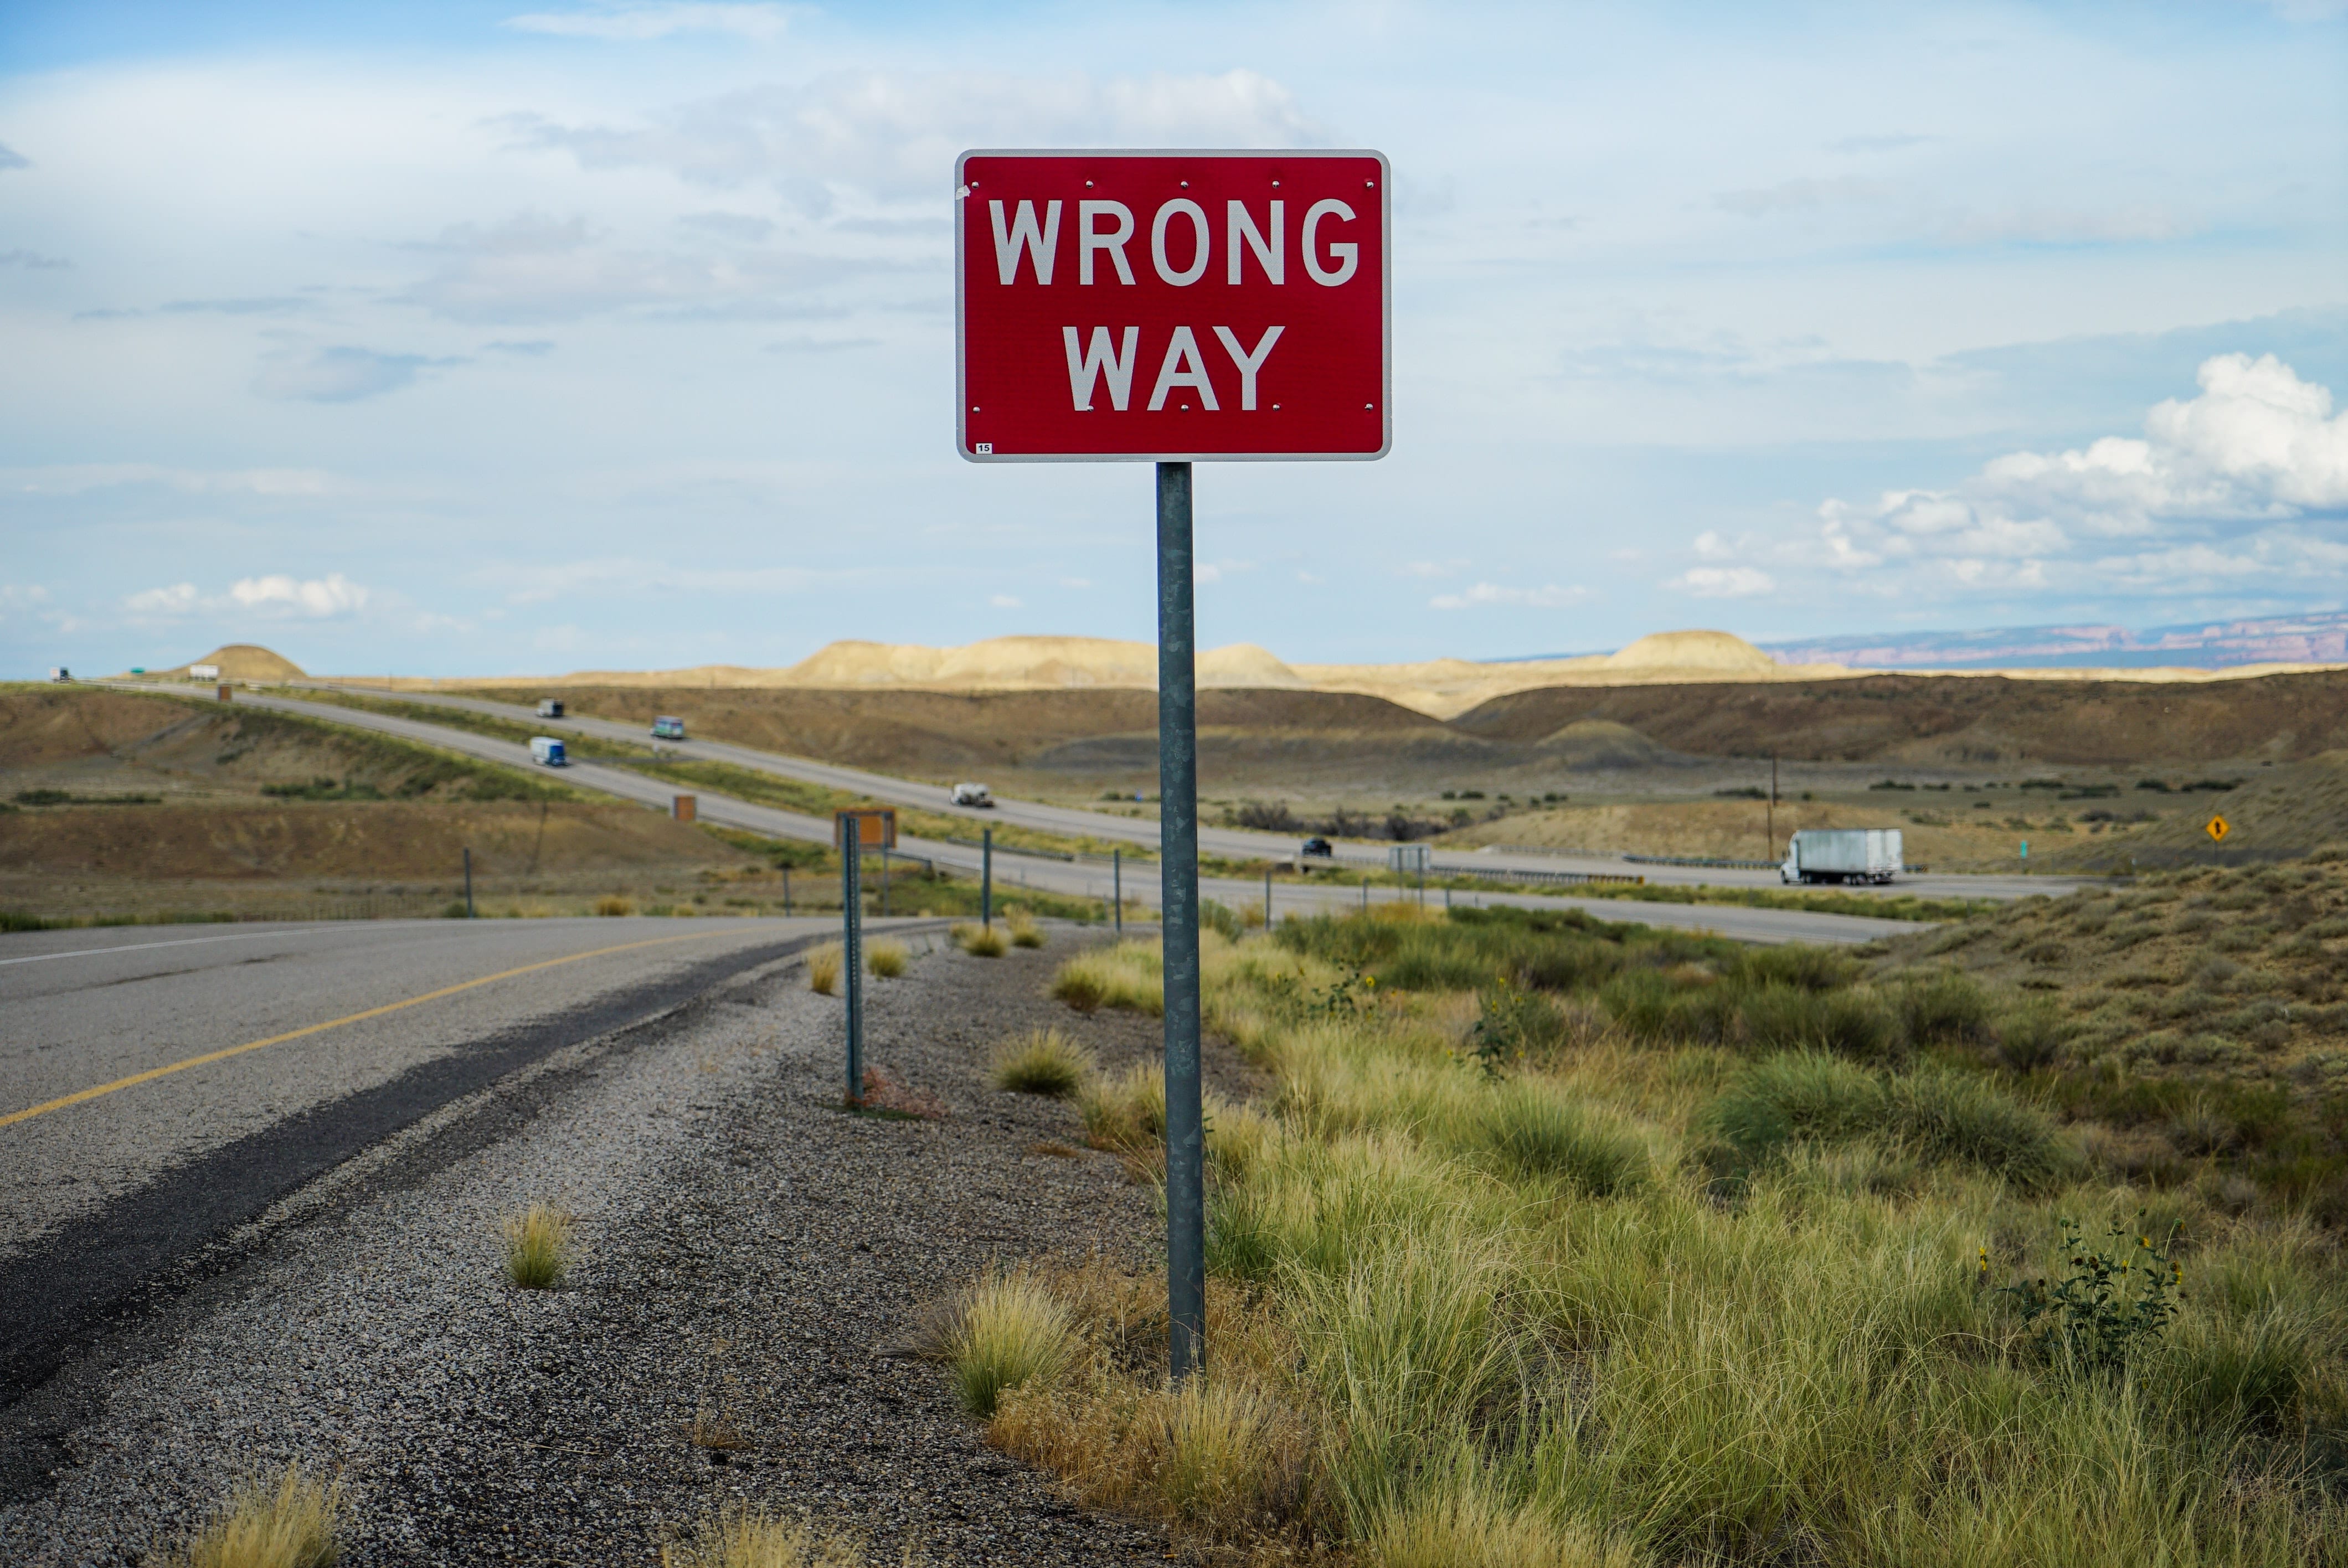 Road sign "Wrong Way"